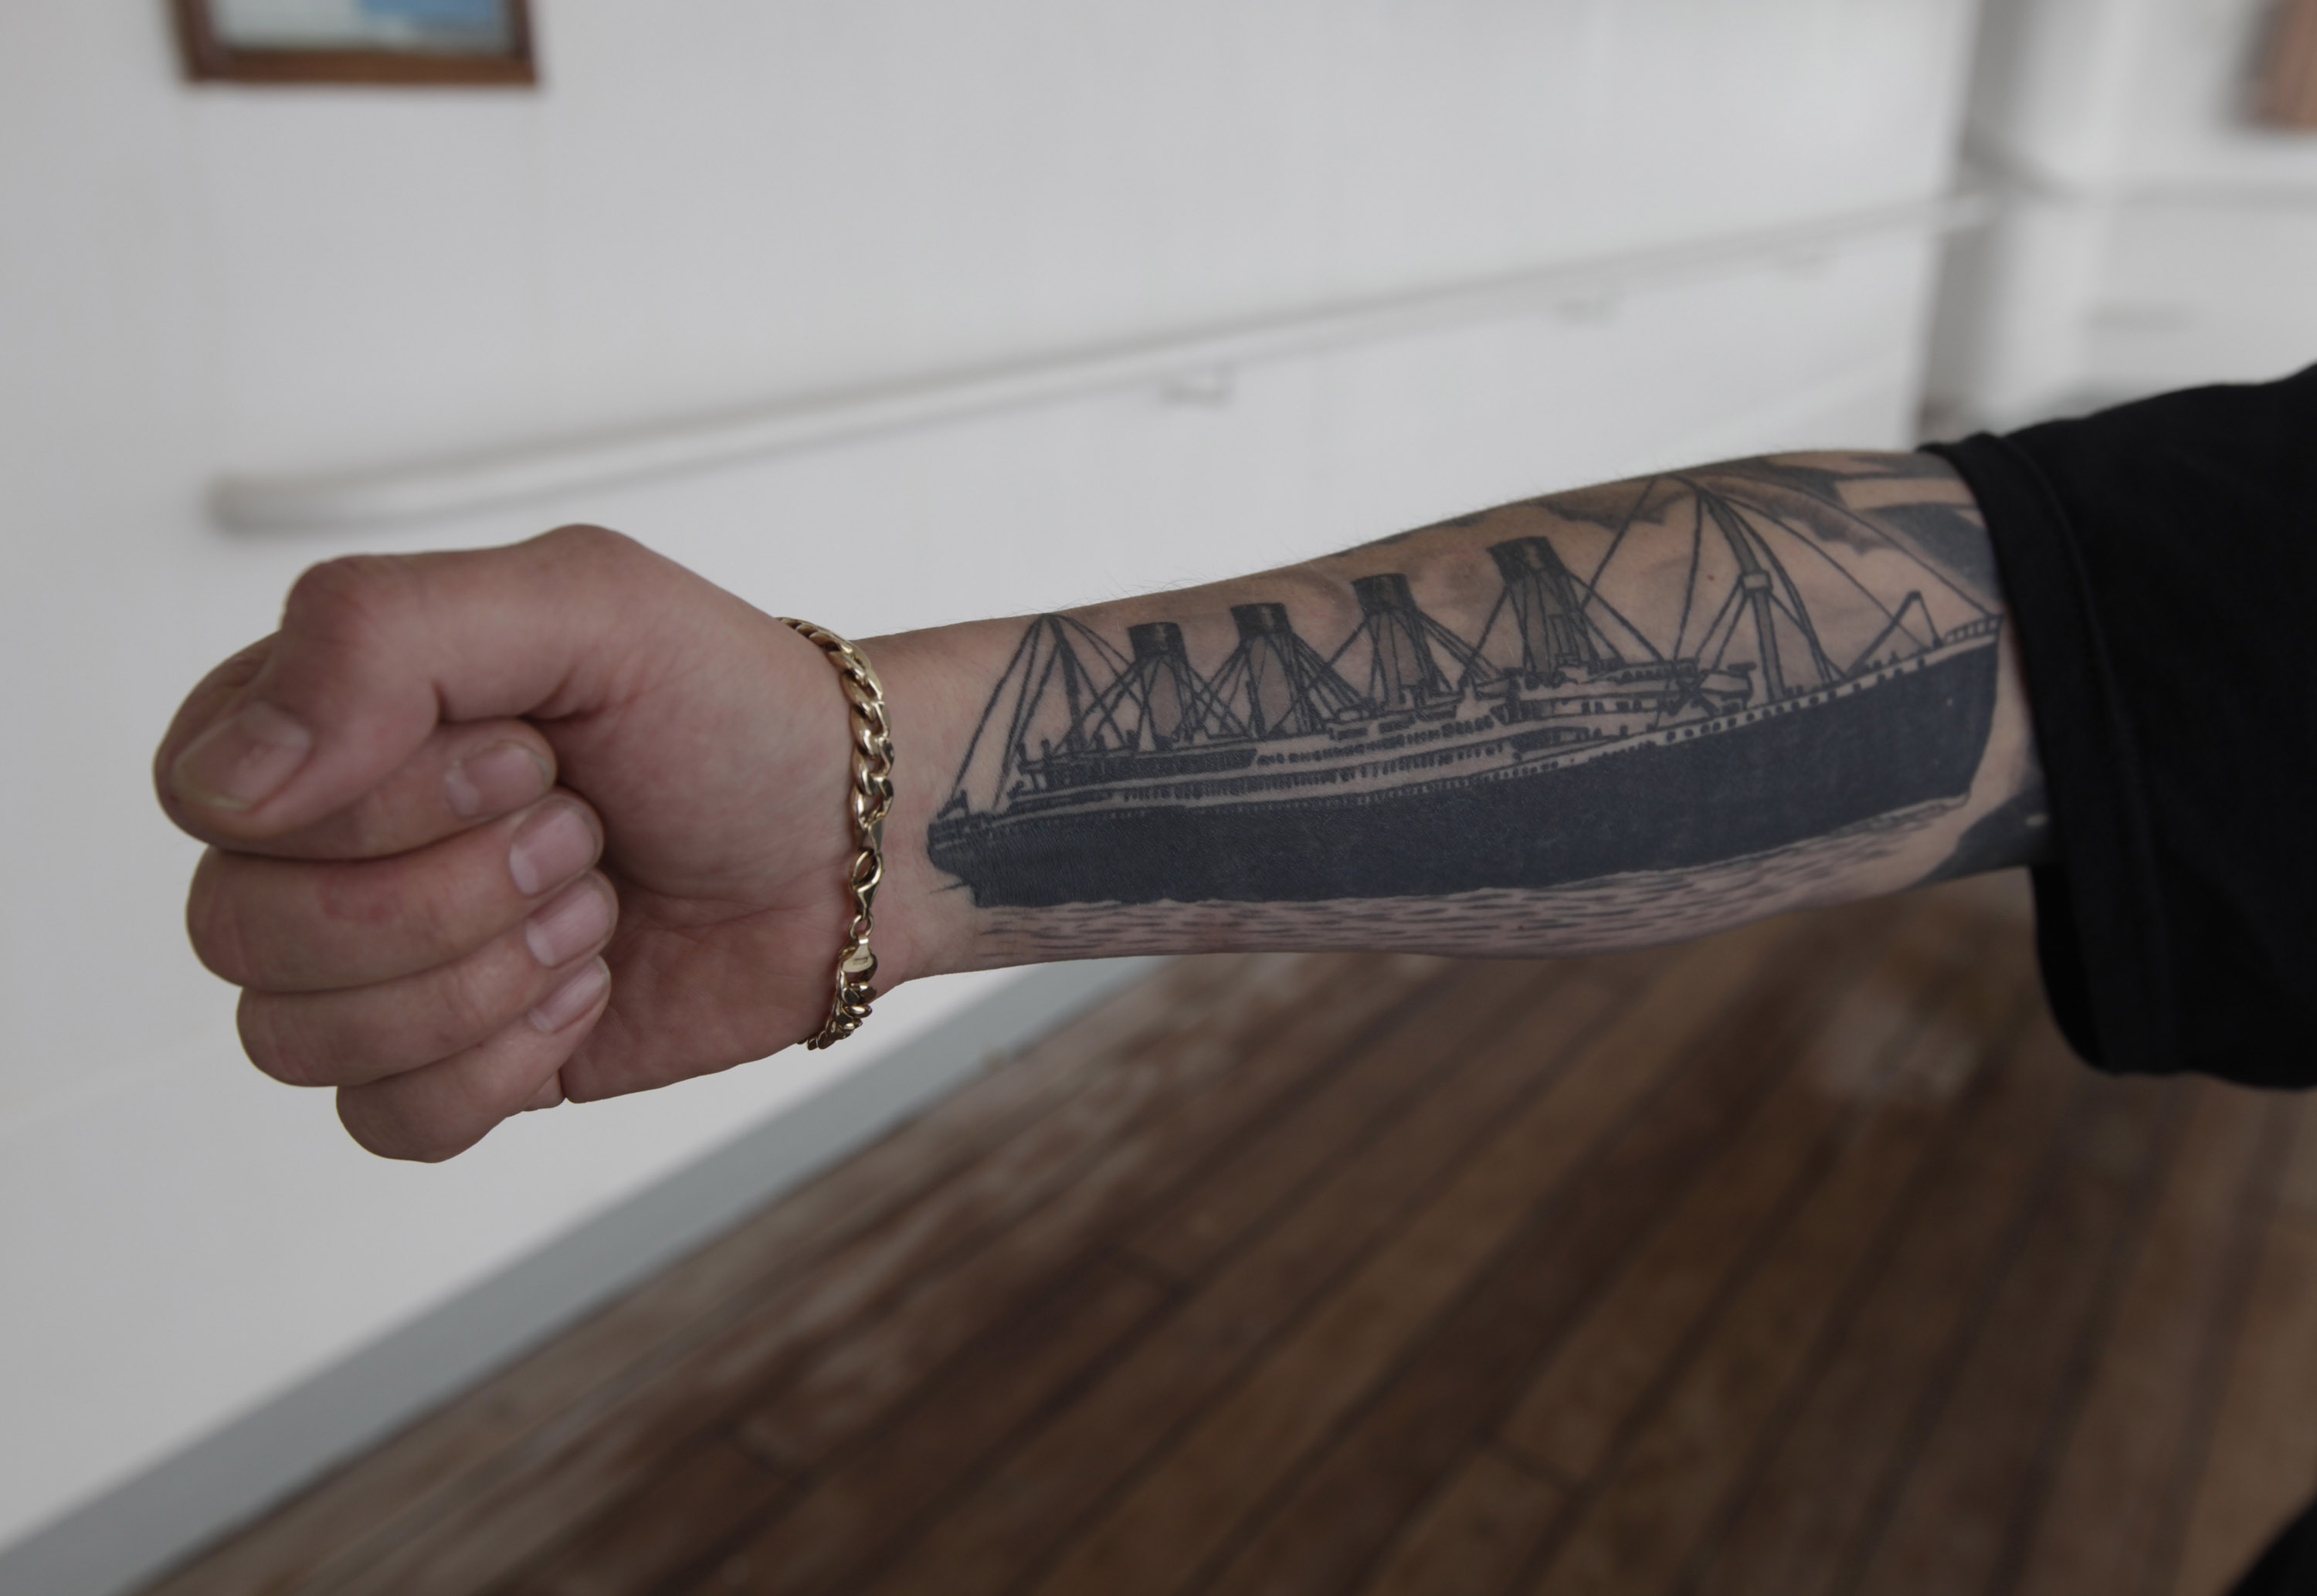 Är man ett ännu mer hängivet Titanic-fan - varför inte en tatuering?